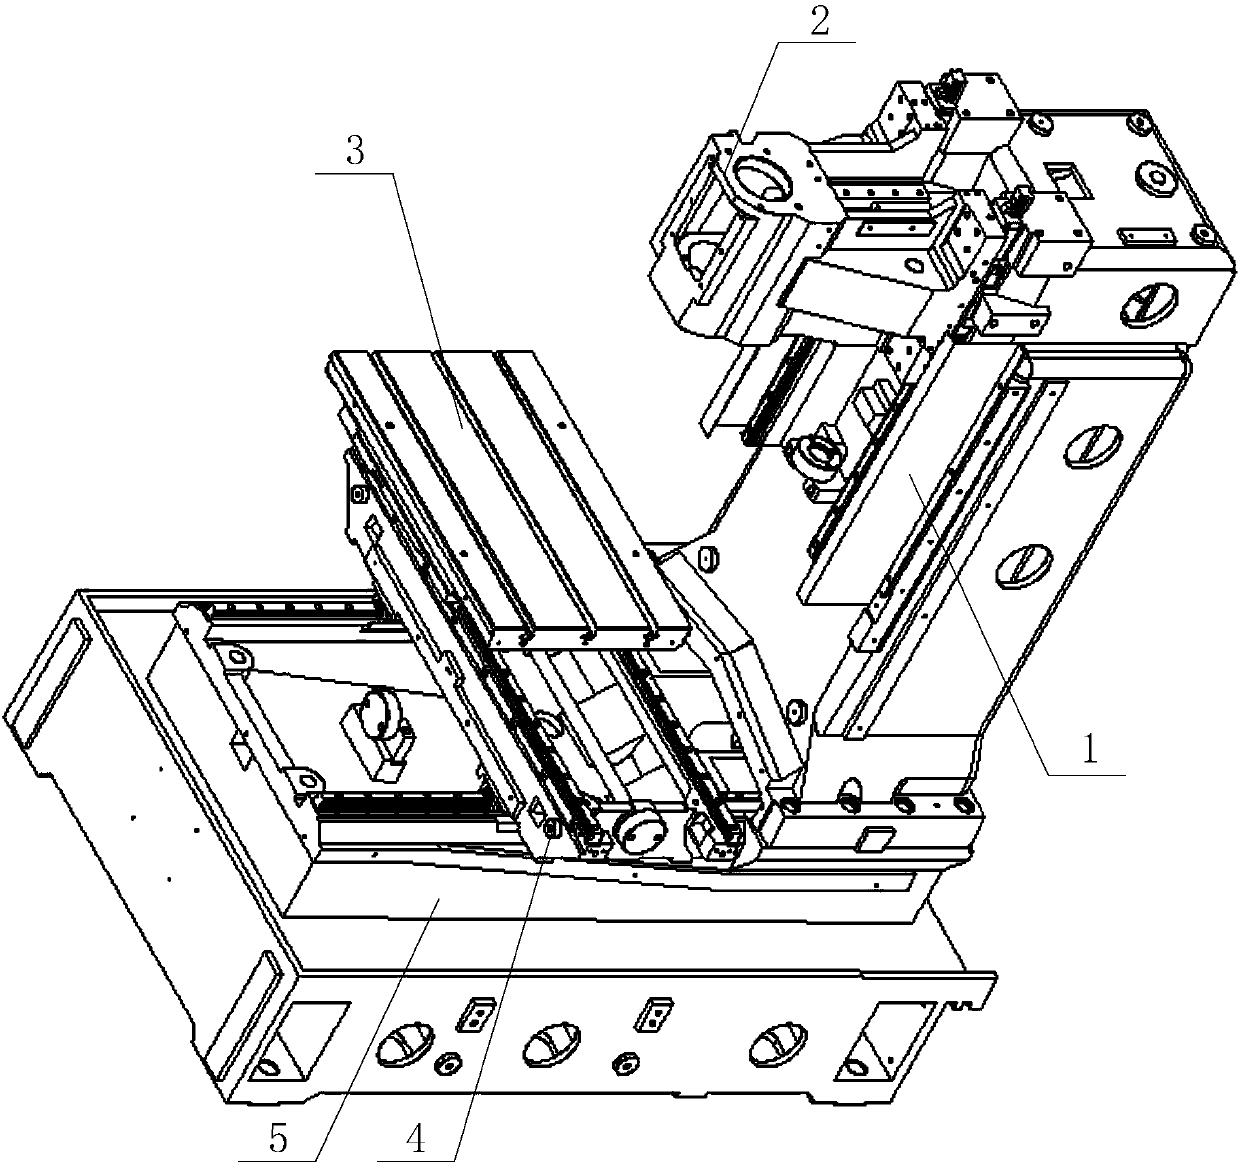 Machining center mechanism